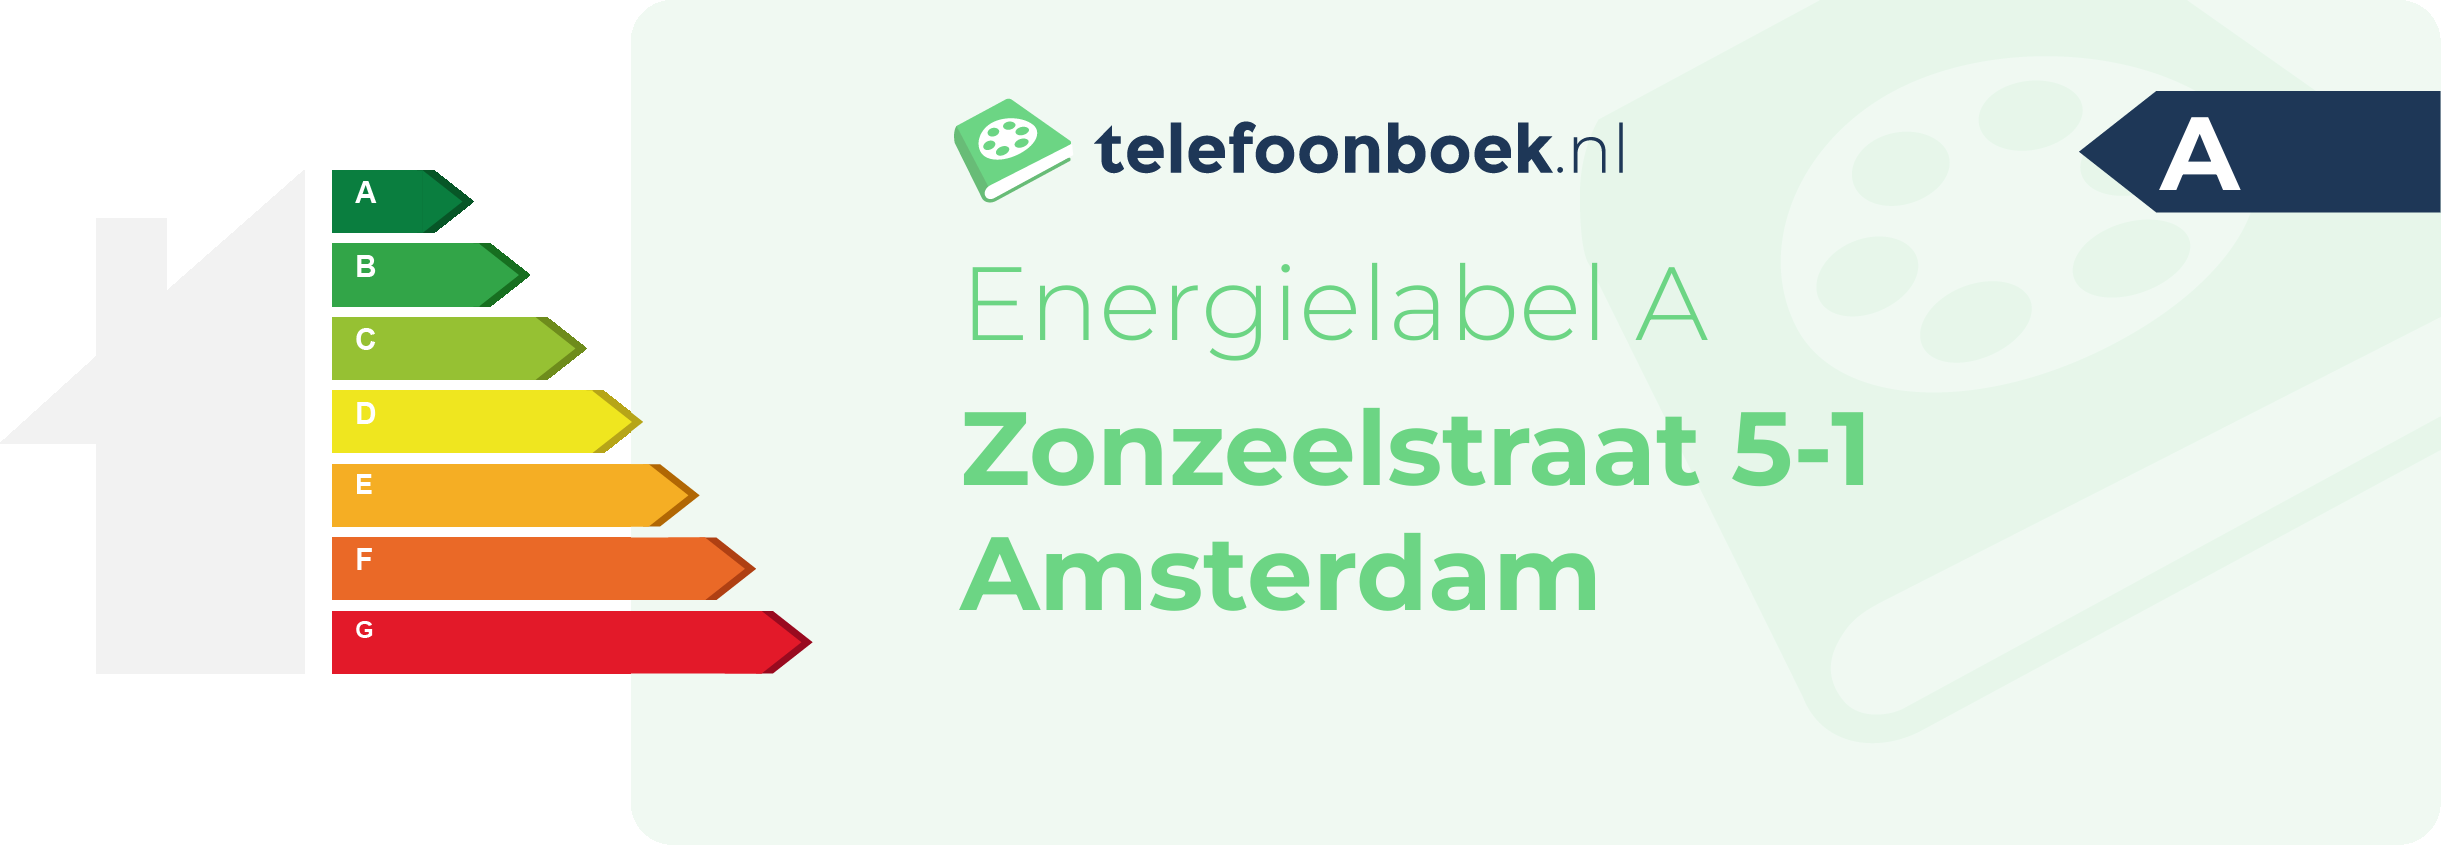 Energielabel Zonzeelstraat 5-1 Amsterdam